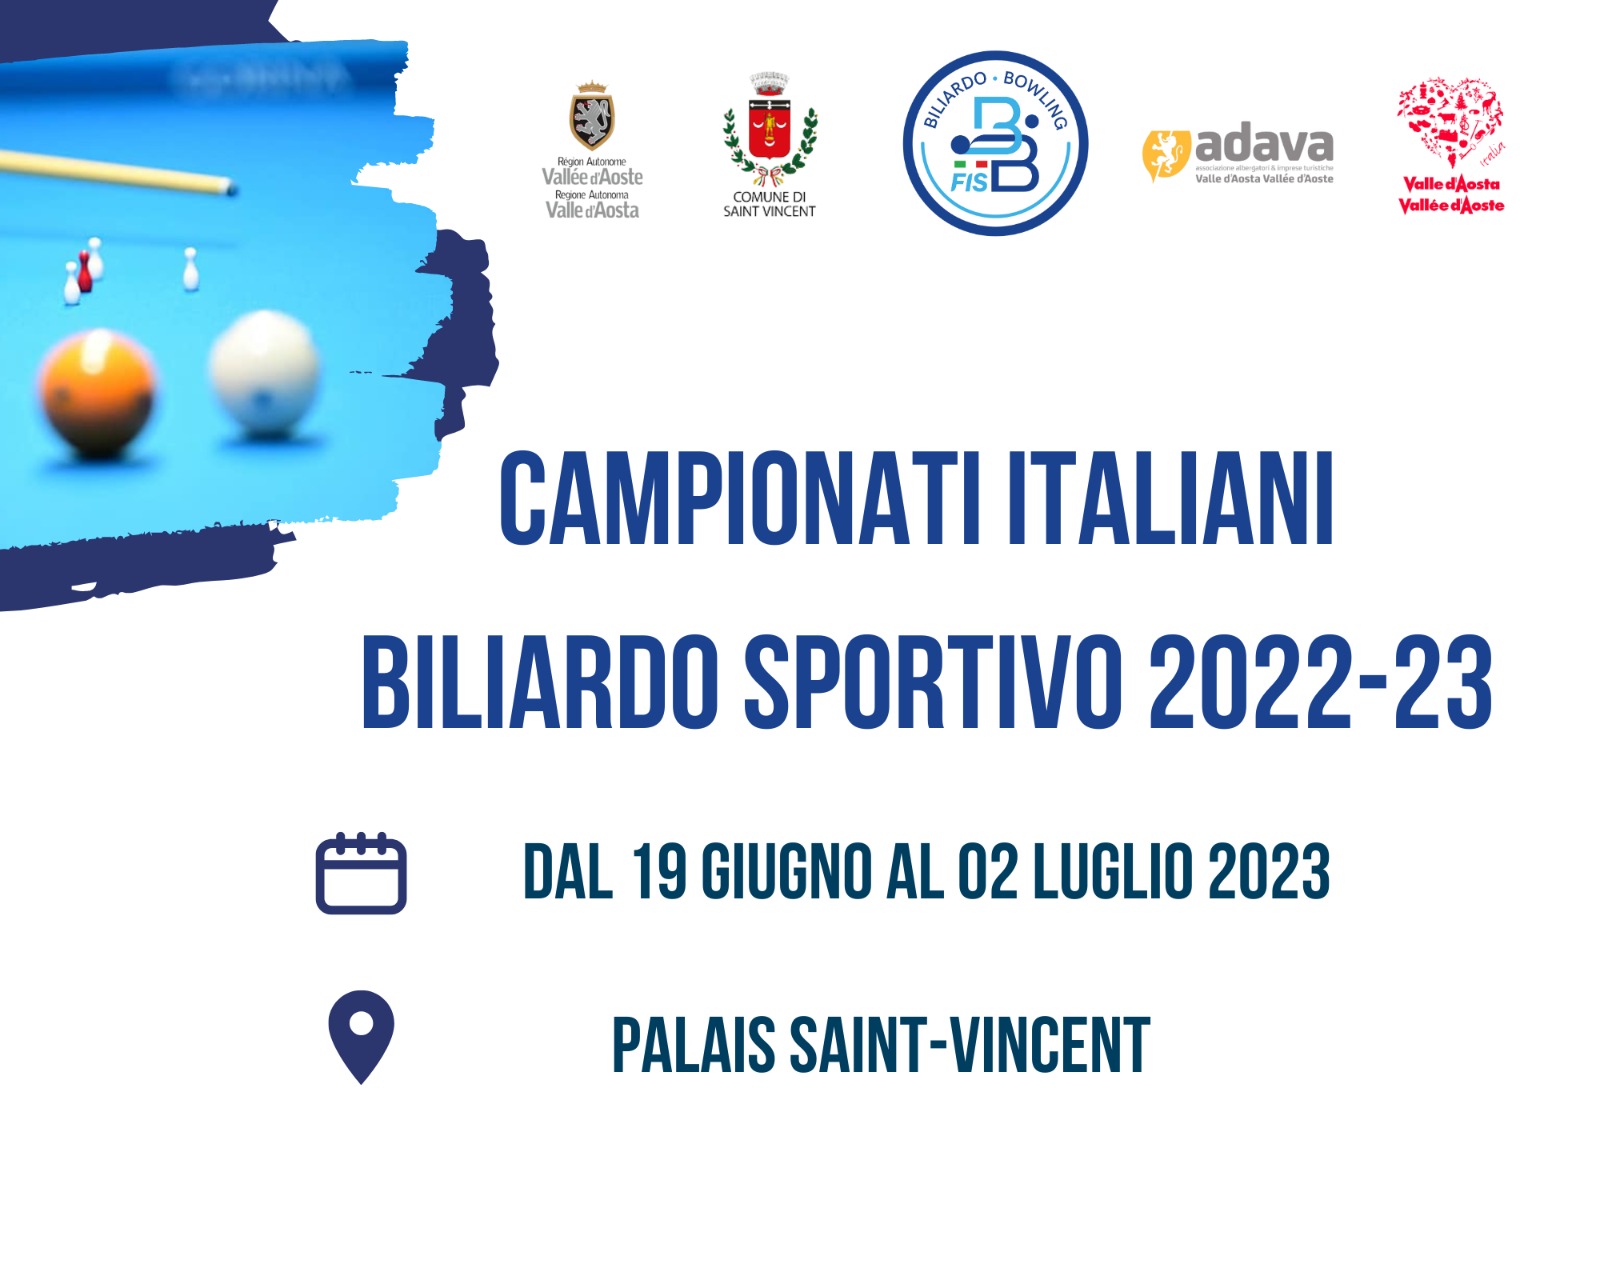 CAMPIONATI ITALIANI 2023 - APERTURA ISCRIZIONI